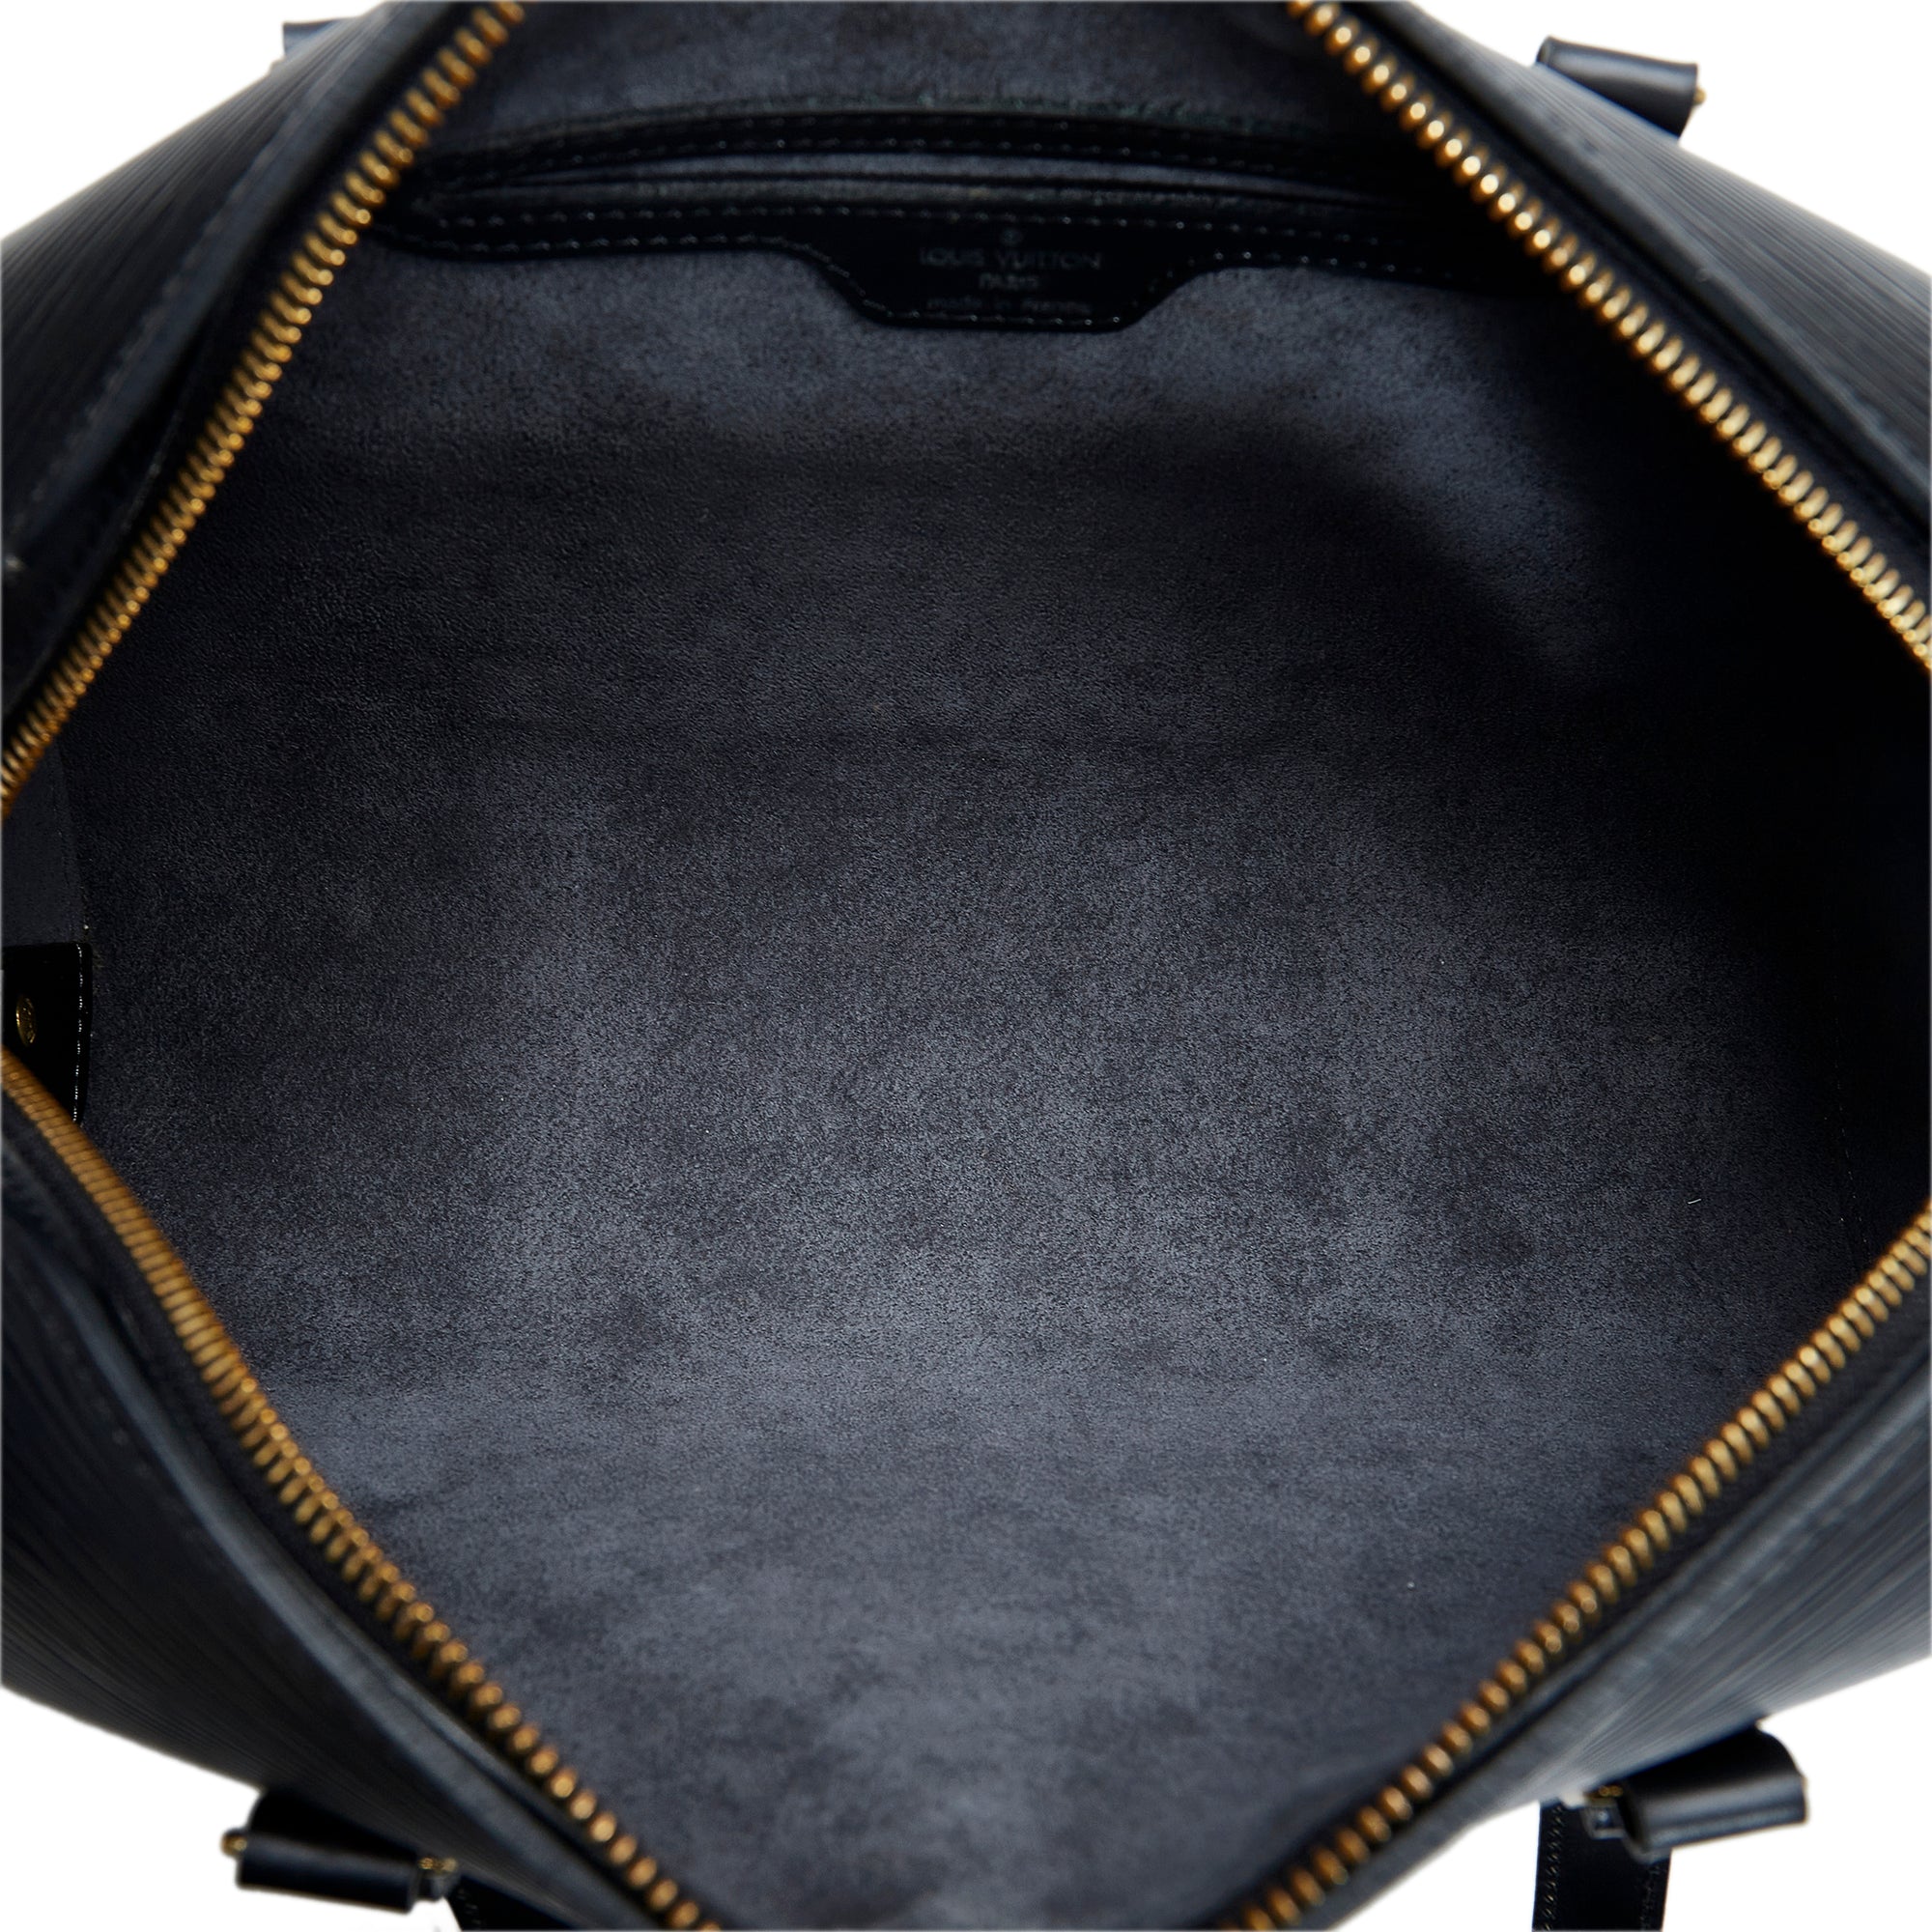 $1400 Louis Vuitton Soufflot Epi Black Leather Bag & Accessories